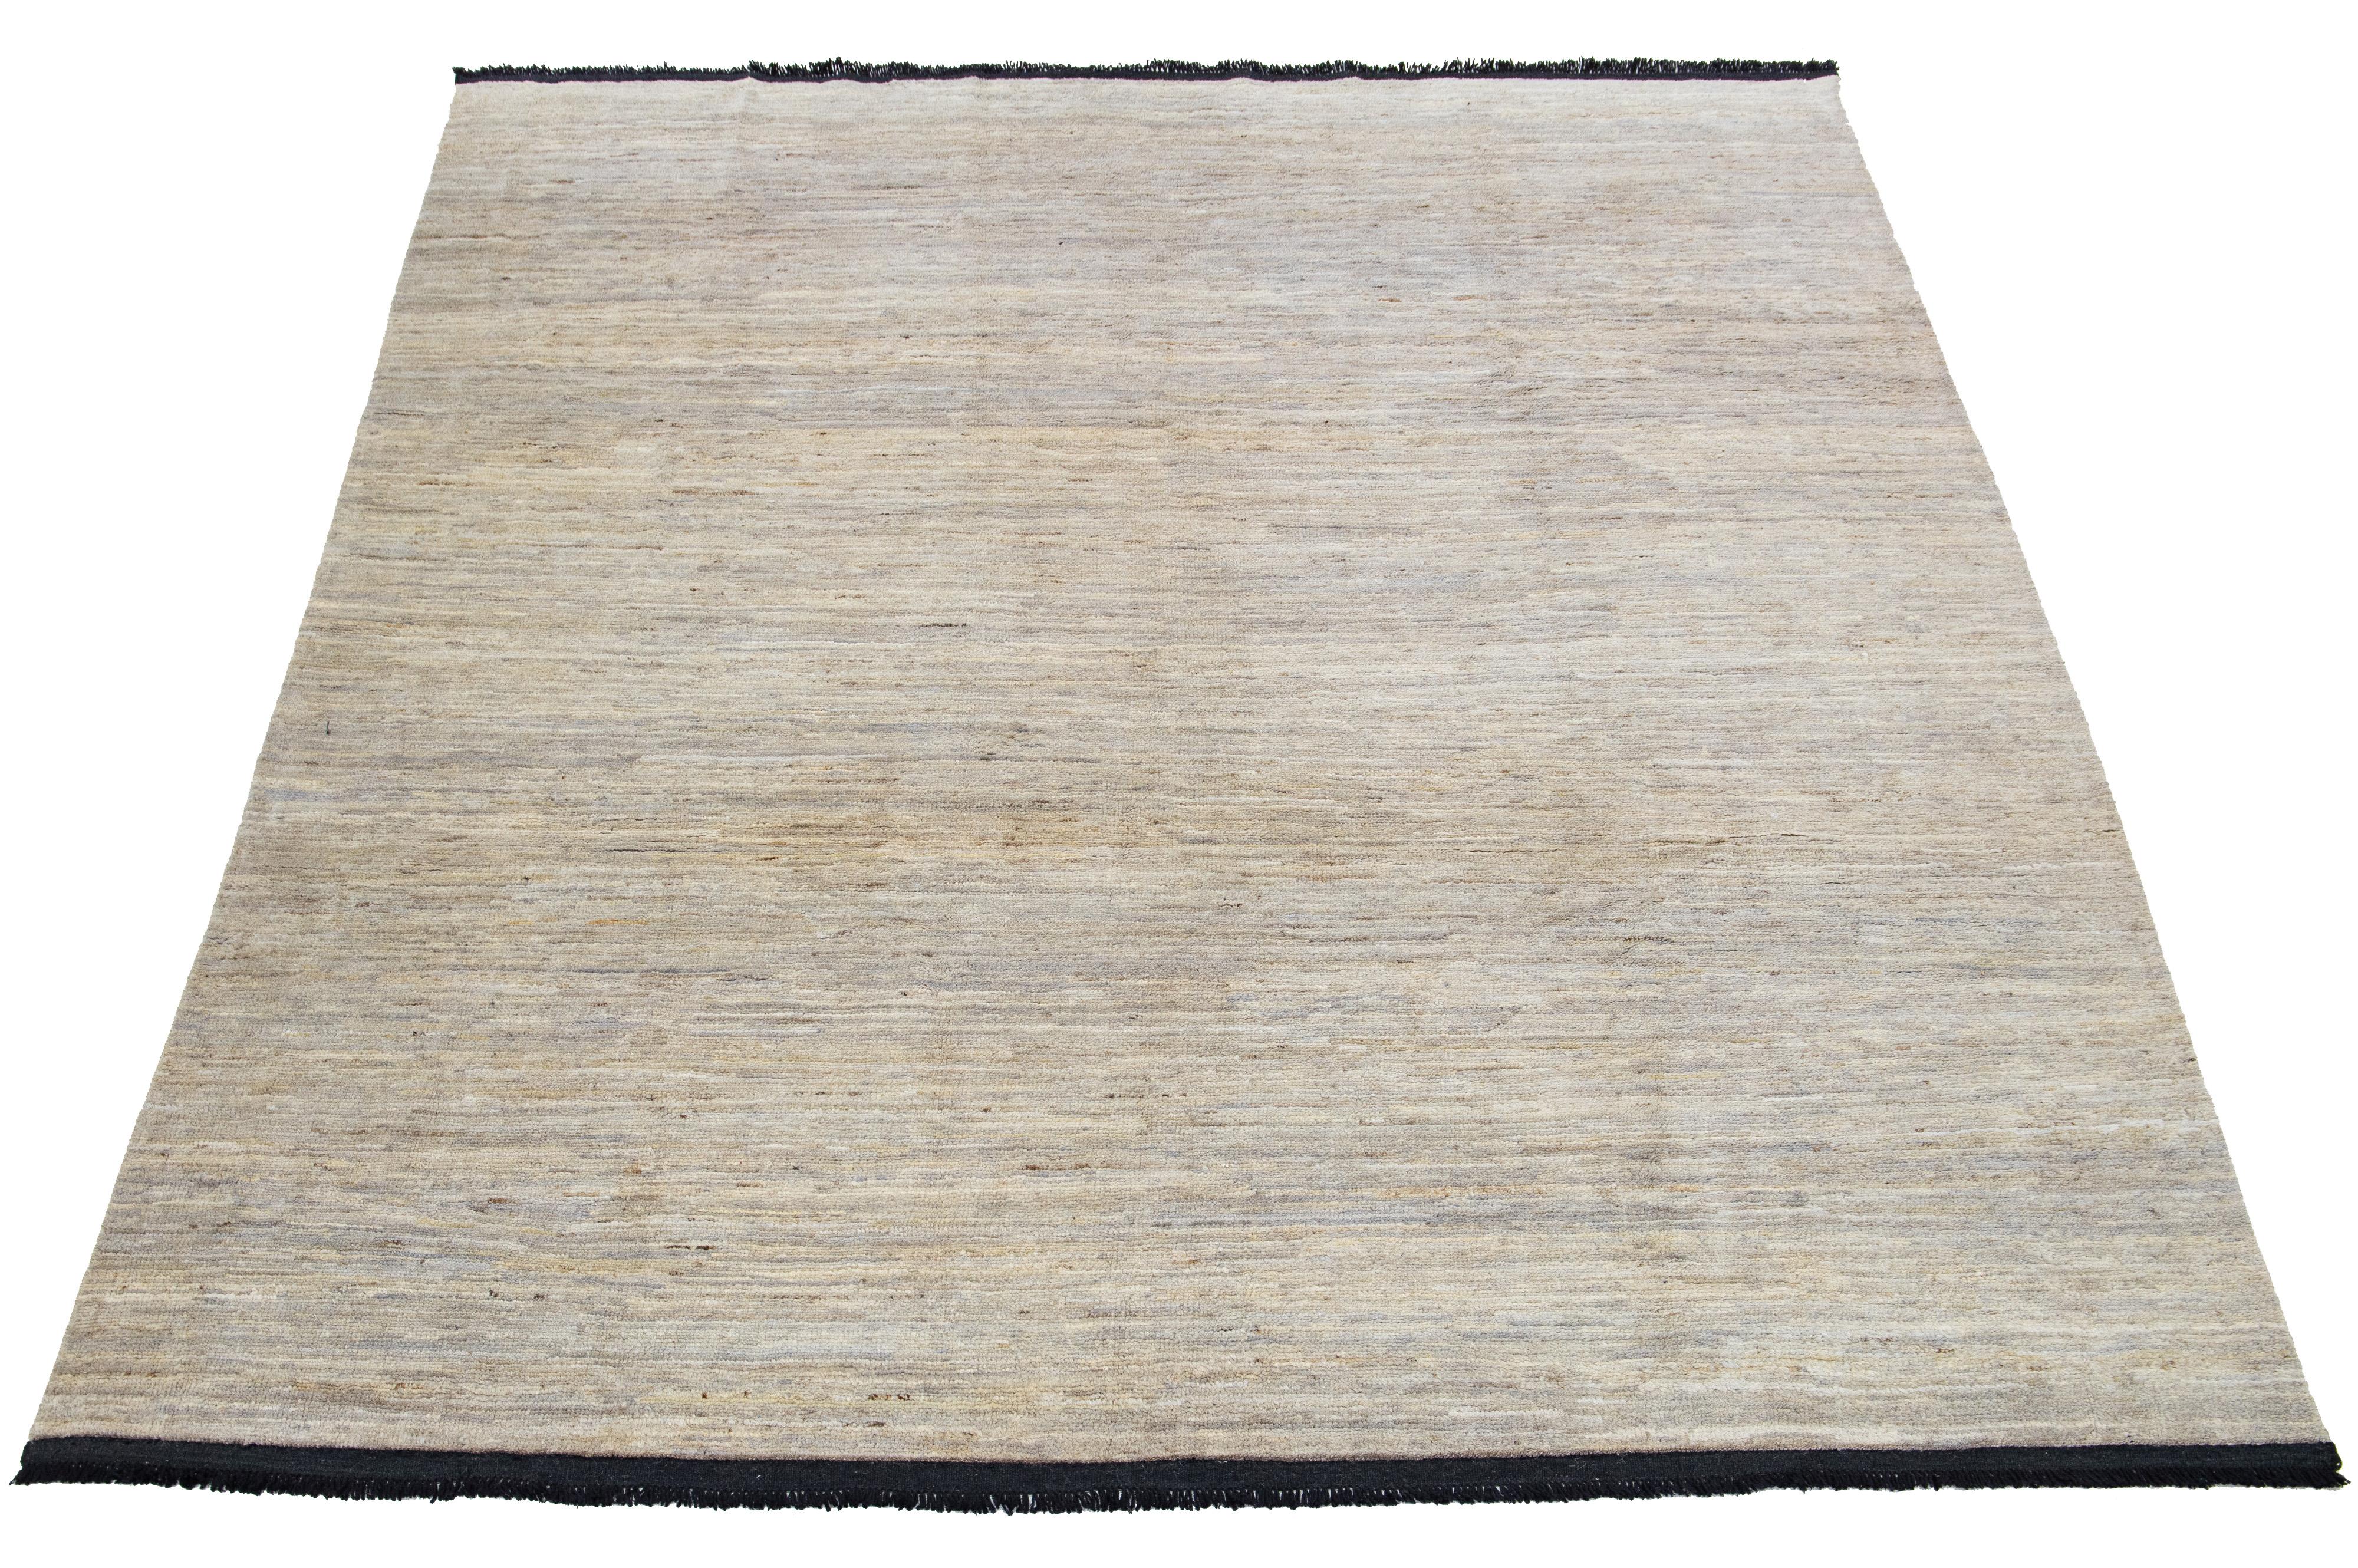 Ce tapis en laine fabriqué à la main, conçu dans le style Gabbeh, présente un motif solide accentué par des nuances de gris sur un fond beige avec des franges noires.

Ce tapis mesure 8' x 10'.

Nos tapis sont nettoyés professionnellement avant